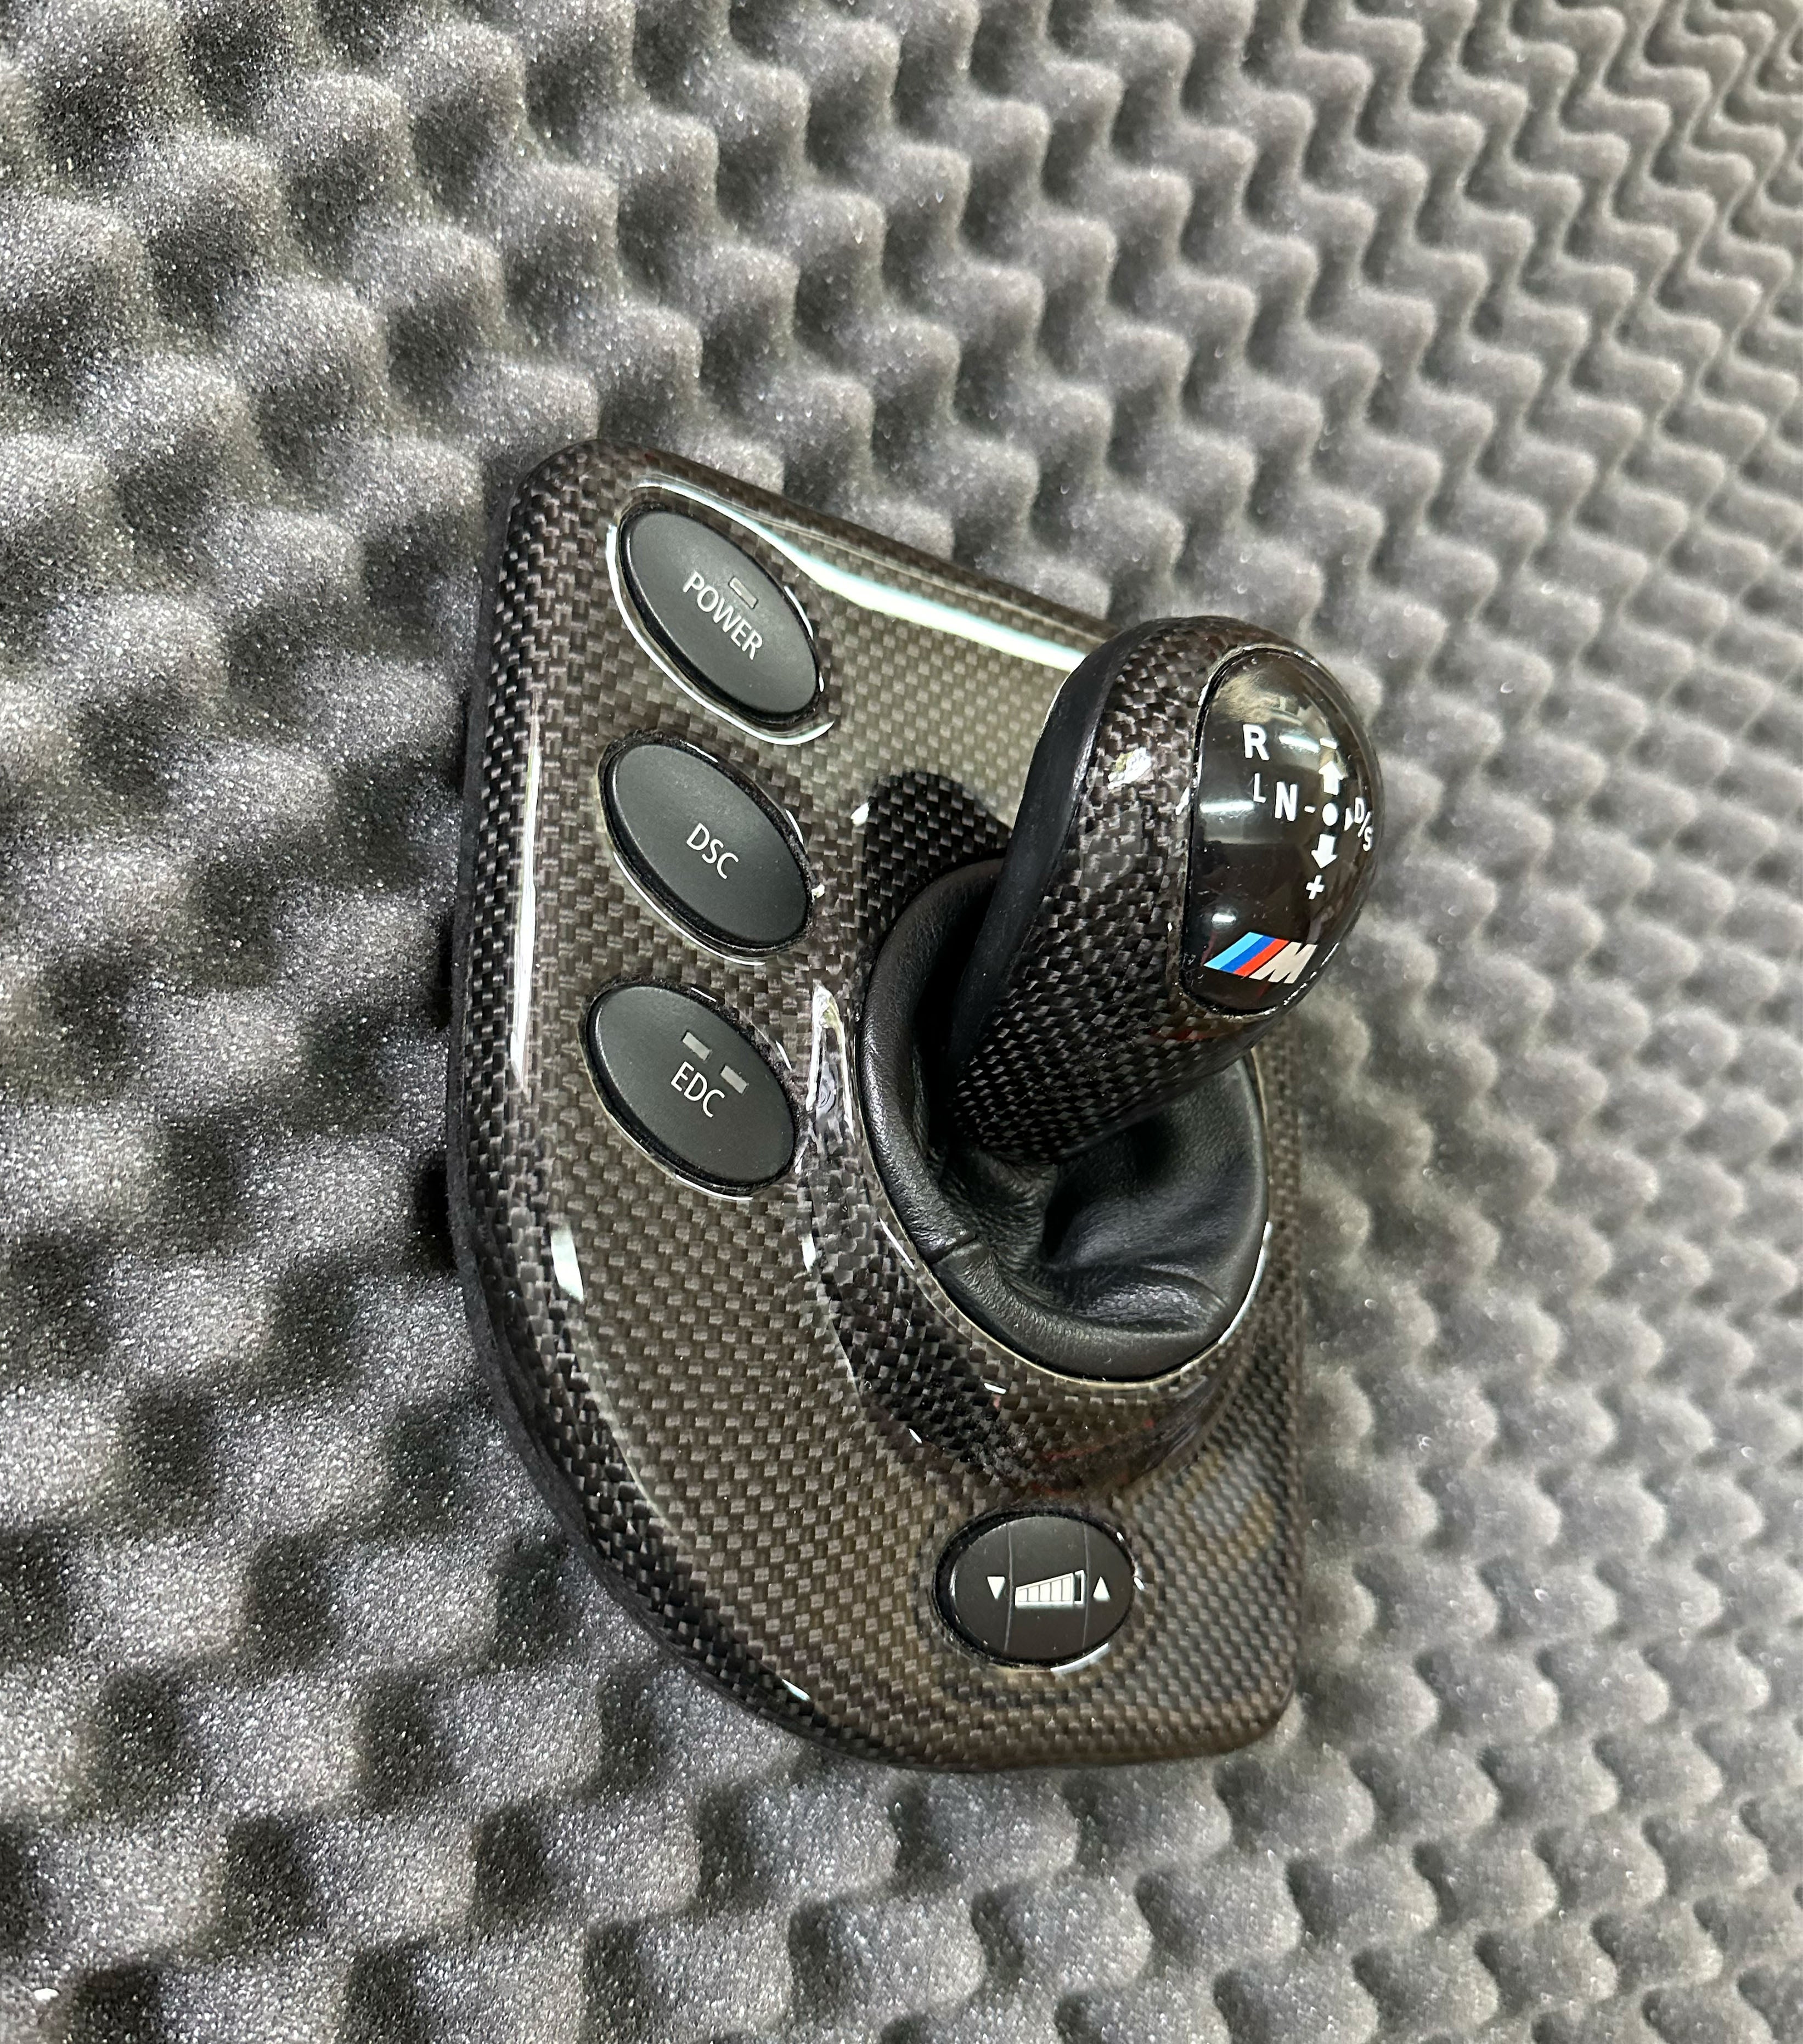 SMG cover gear knob for the BMW E60, E61 M5